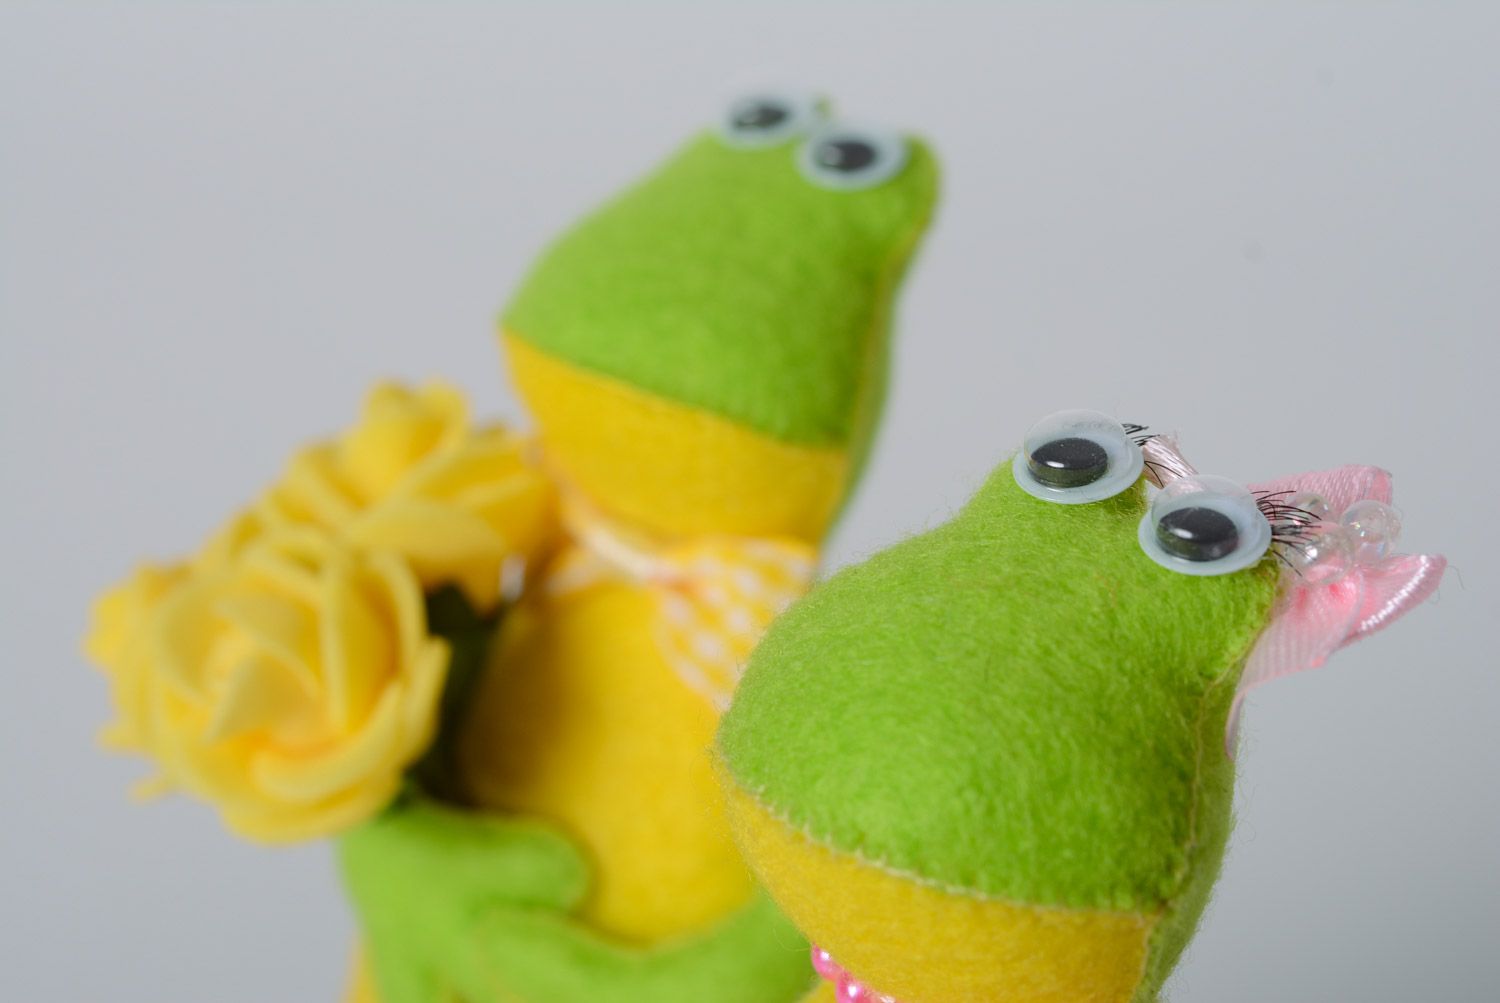 Маленькие мягкие лягушки игрушки ручной работы желто-зеленые комплект из 2 штук фото 2